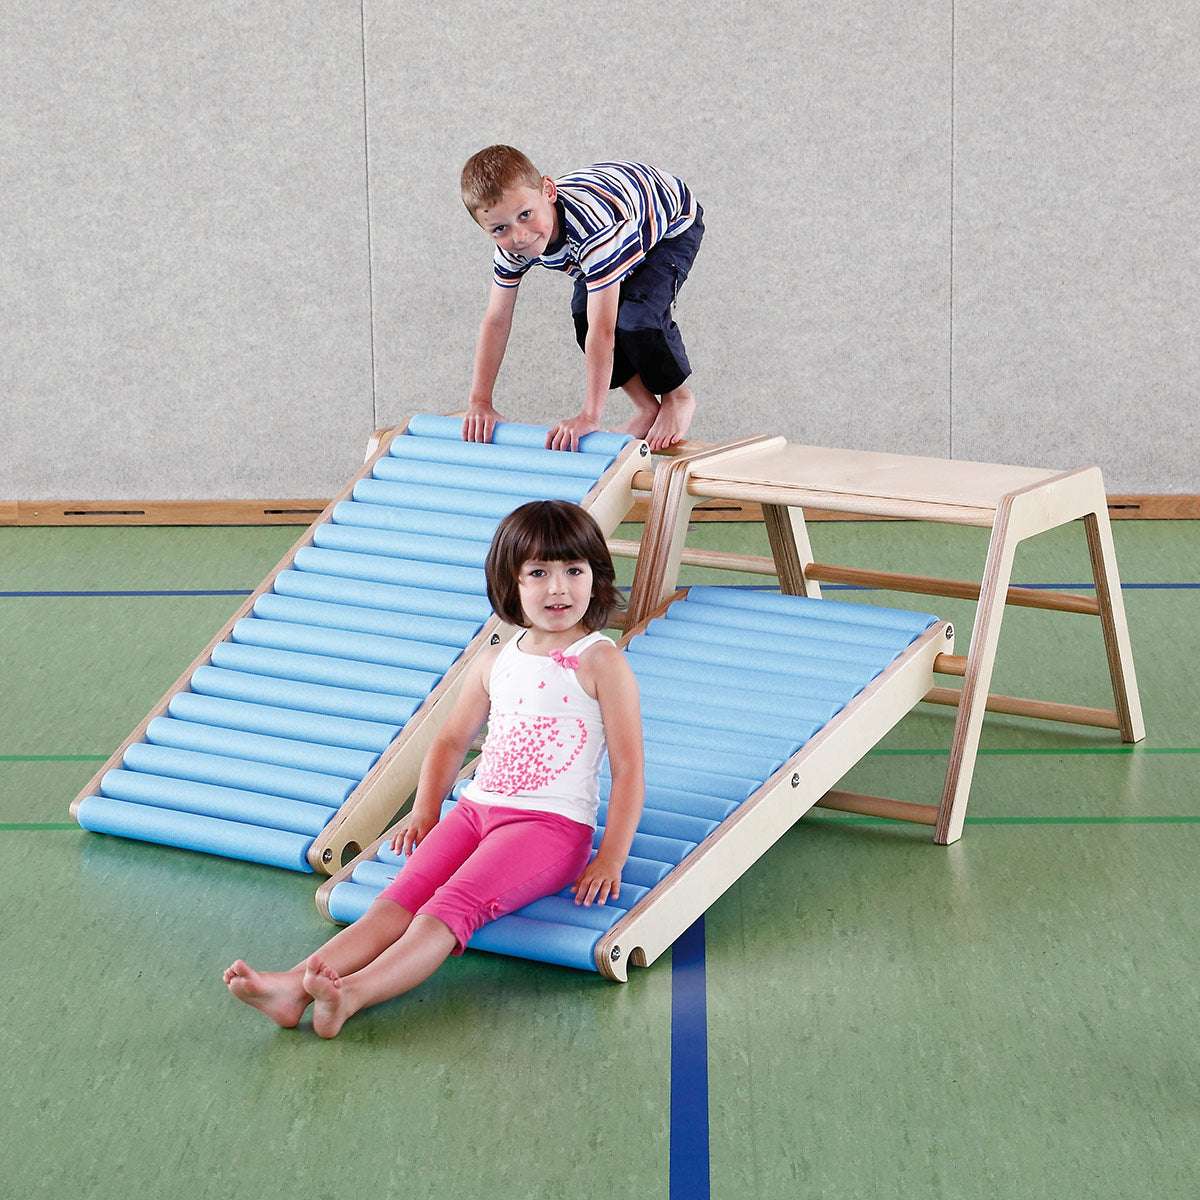 Rollenrutsche - Sportgerät für Kinder